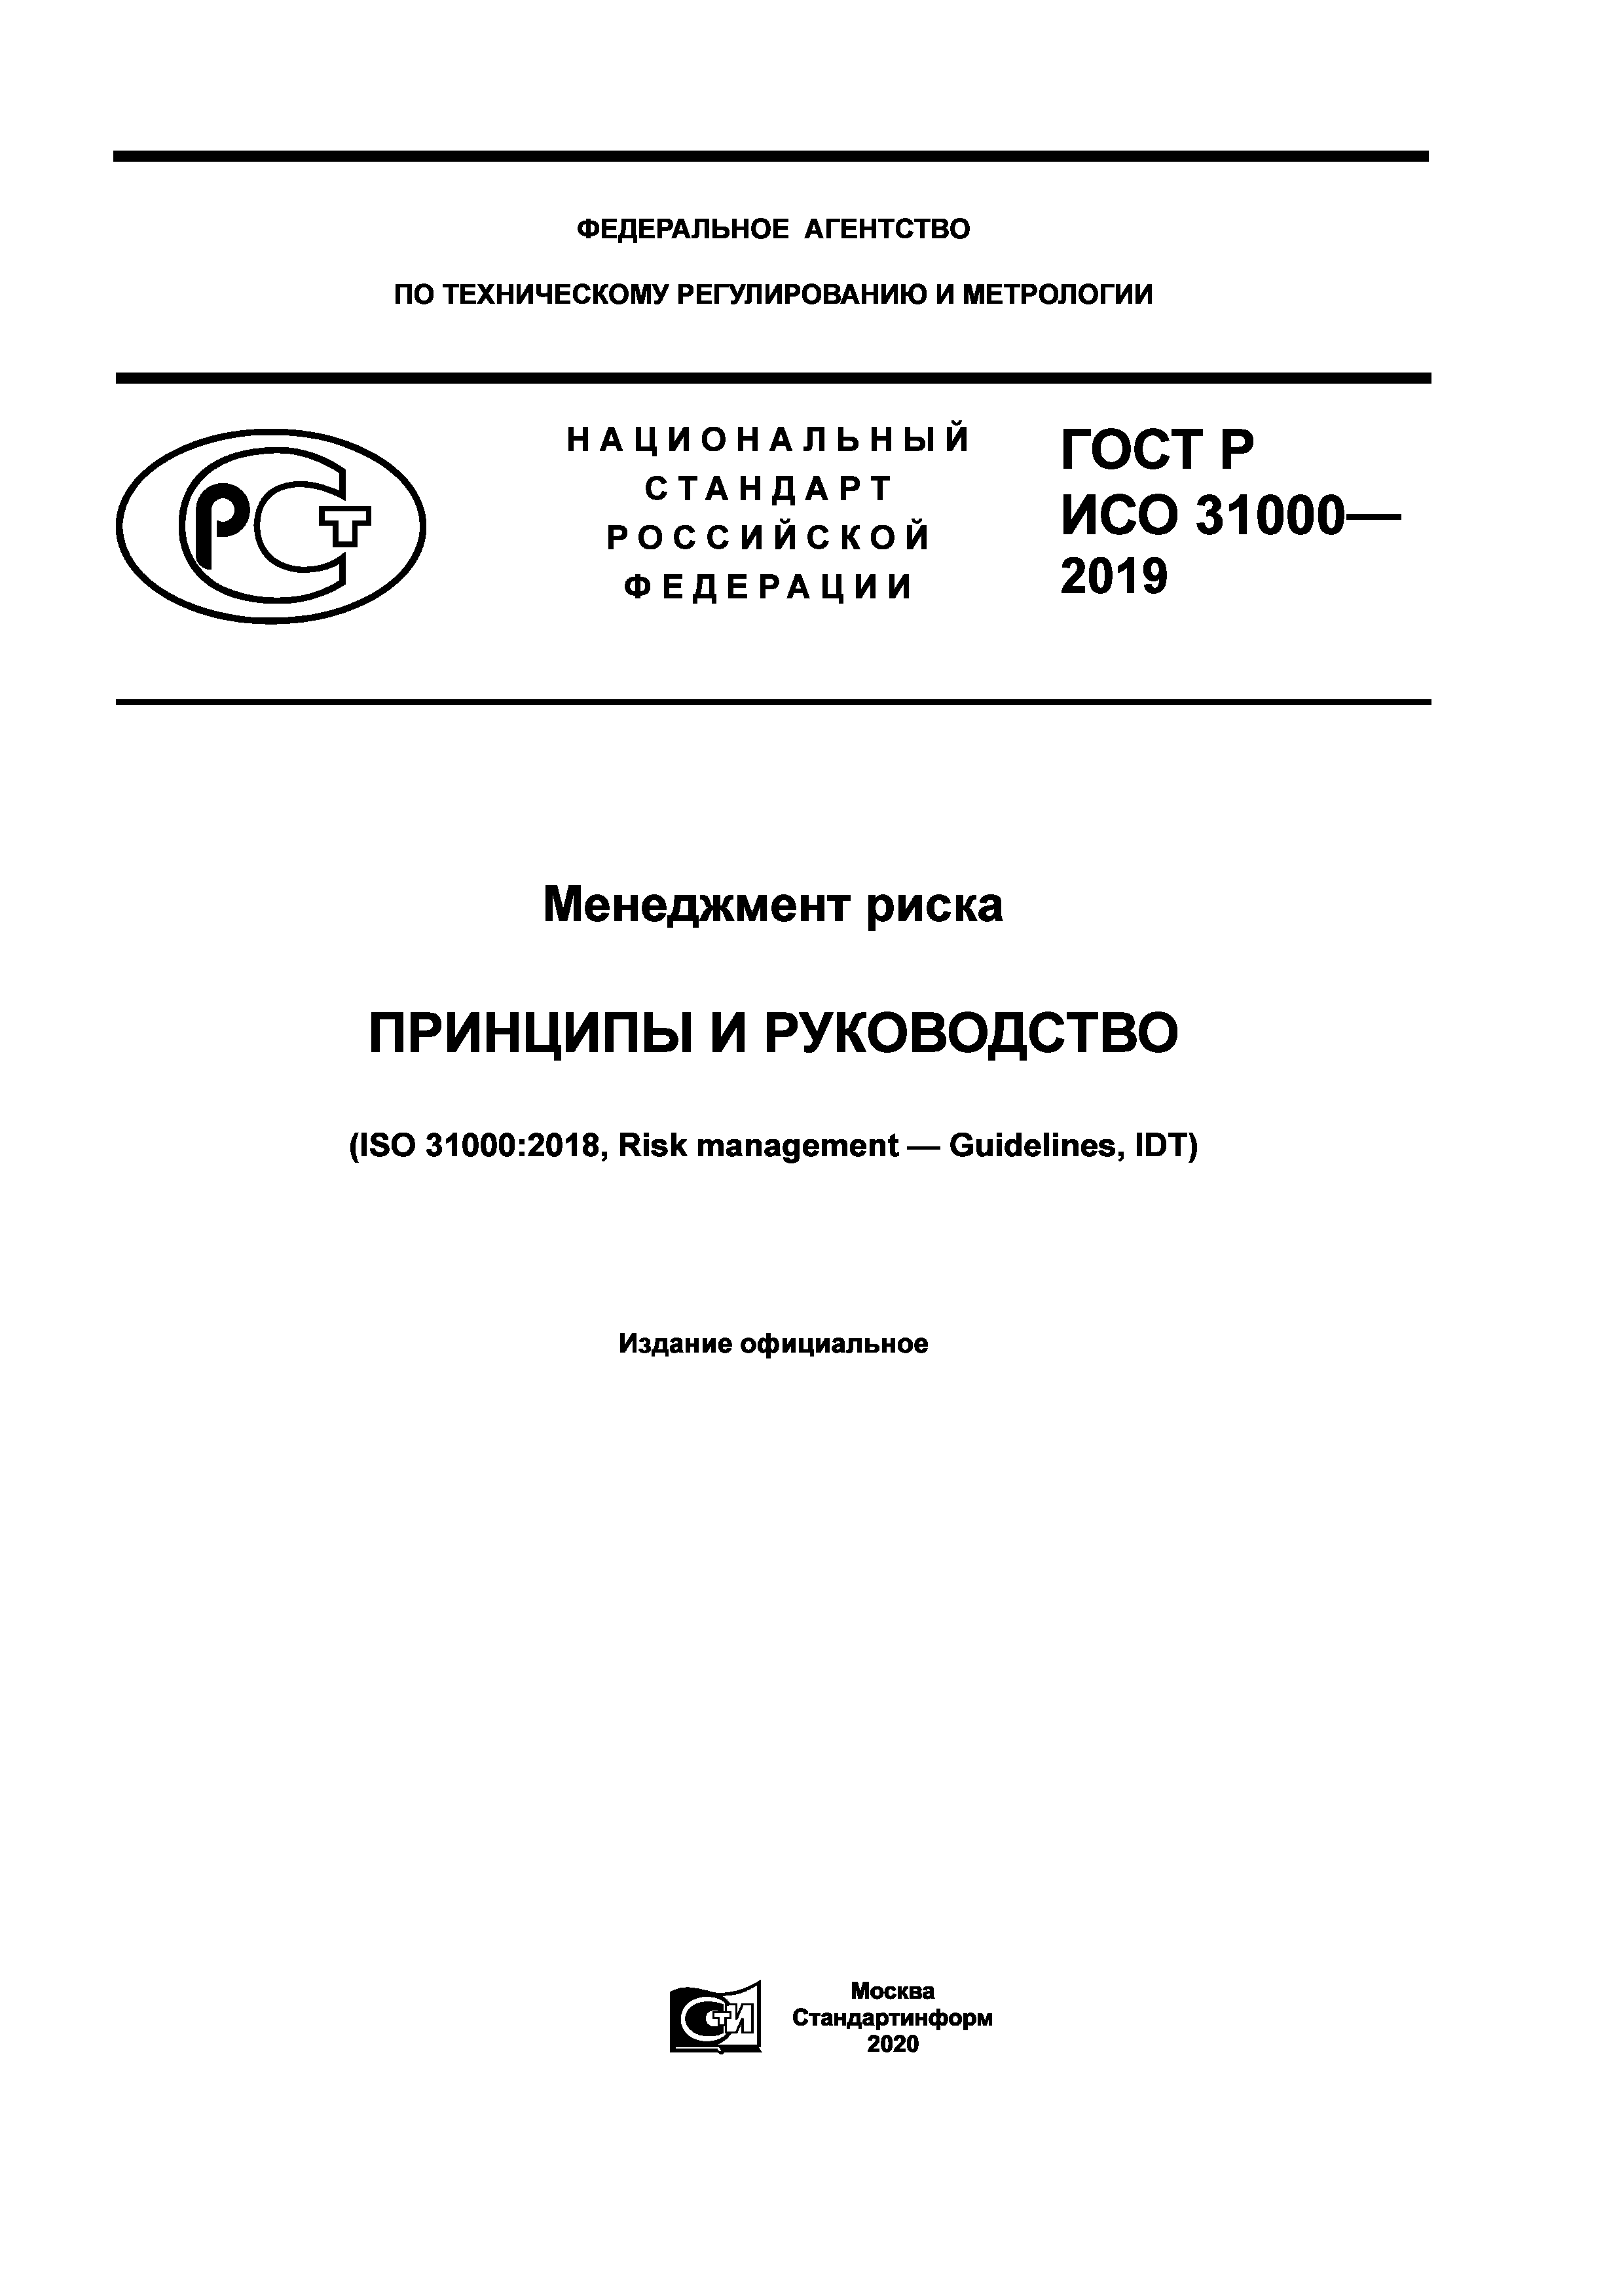 ГОСТ Р ИСО 31000-2019